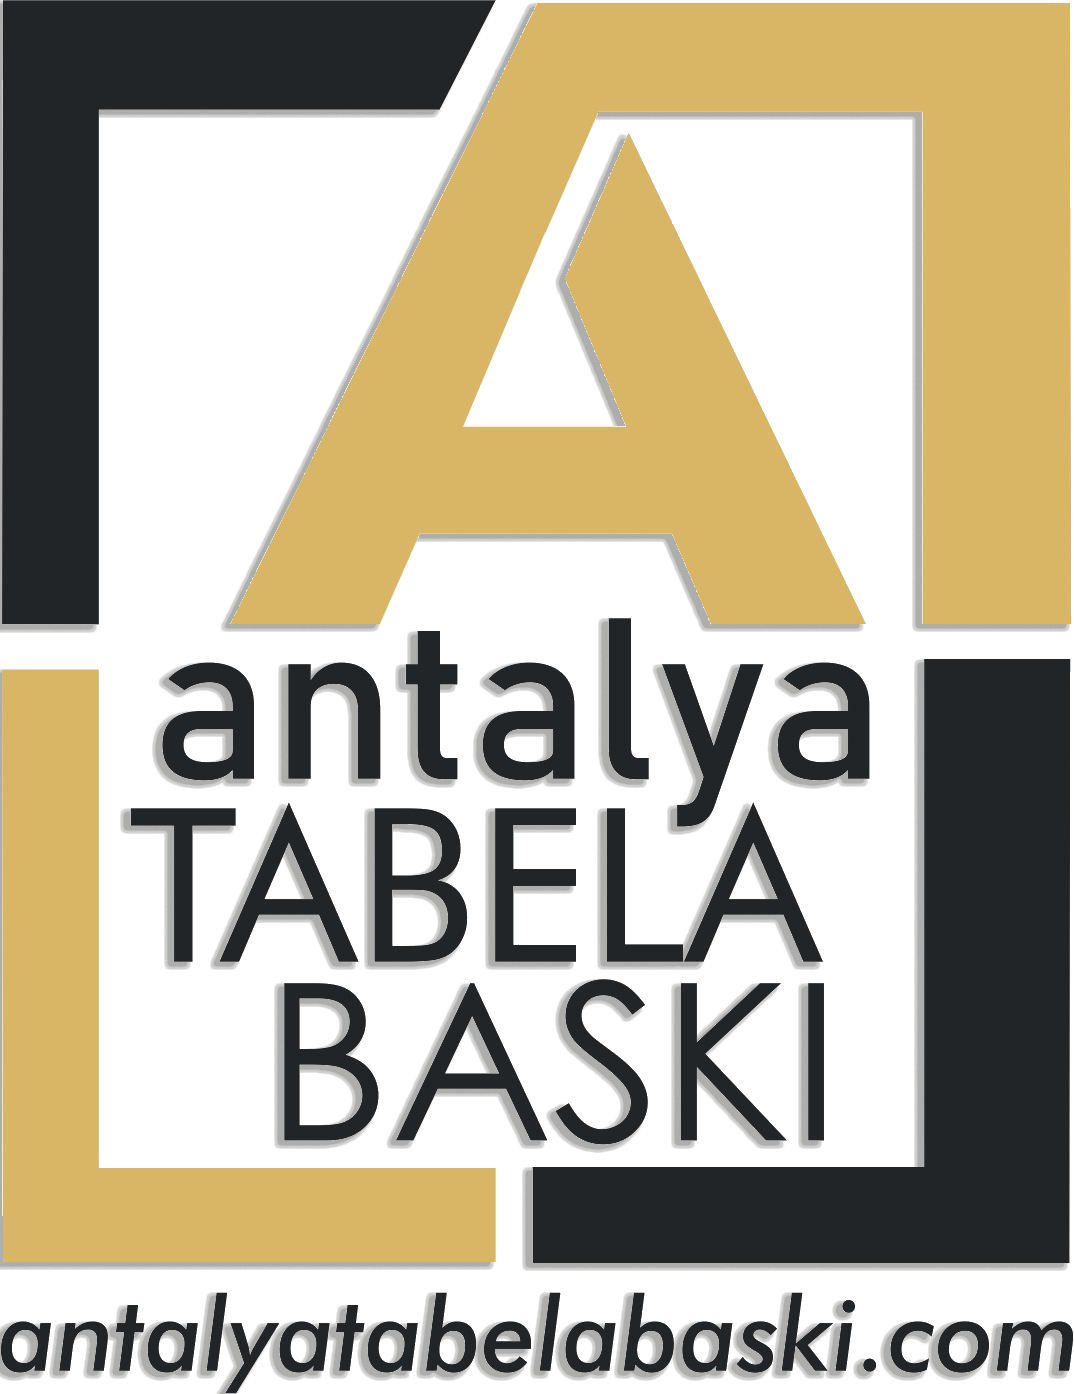 Antalya Tabela Baskı, Antalya Tabela